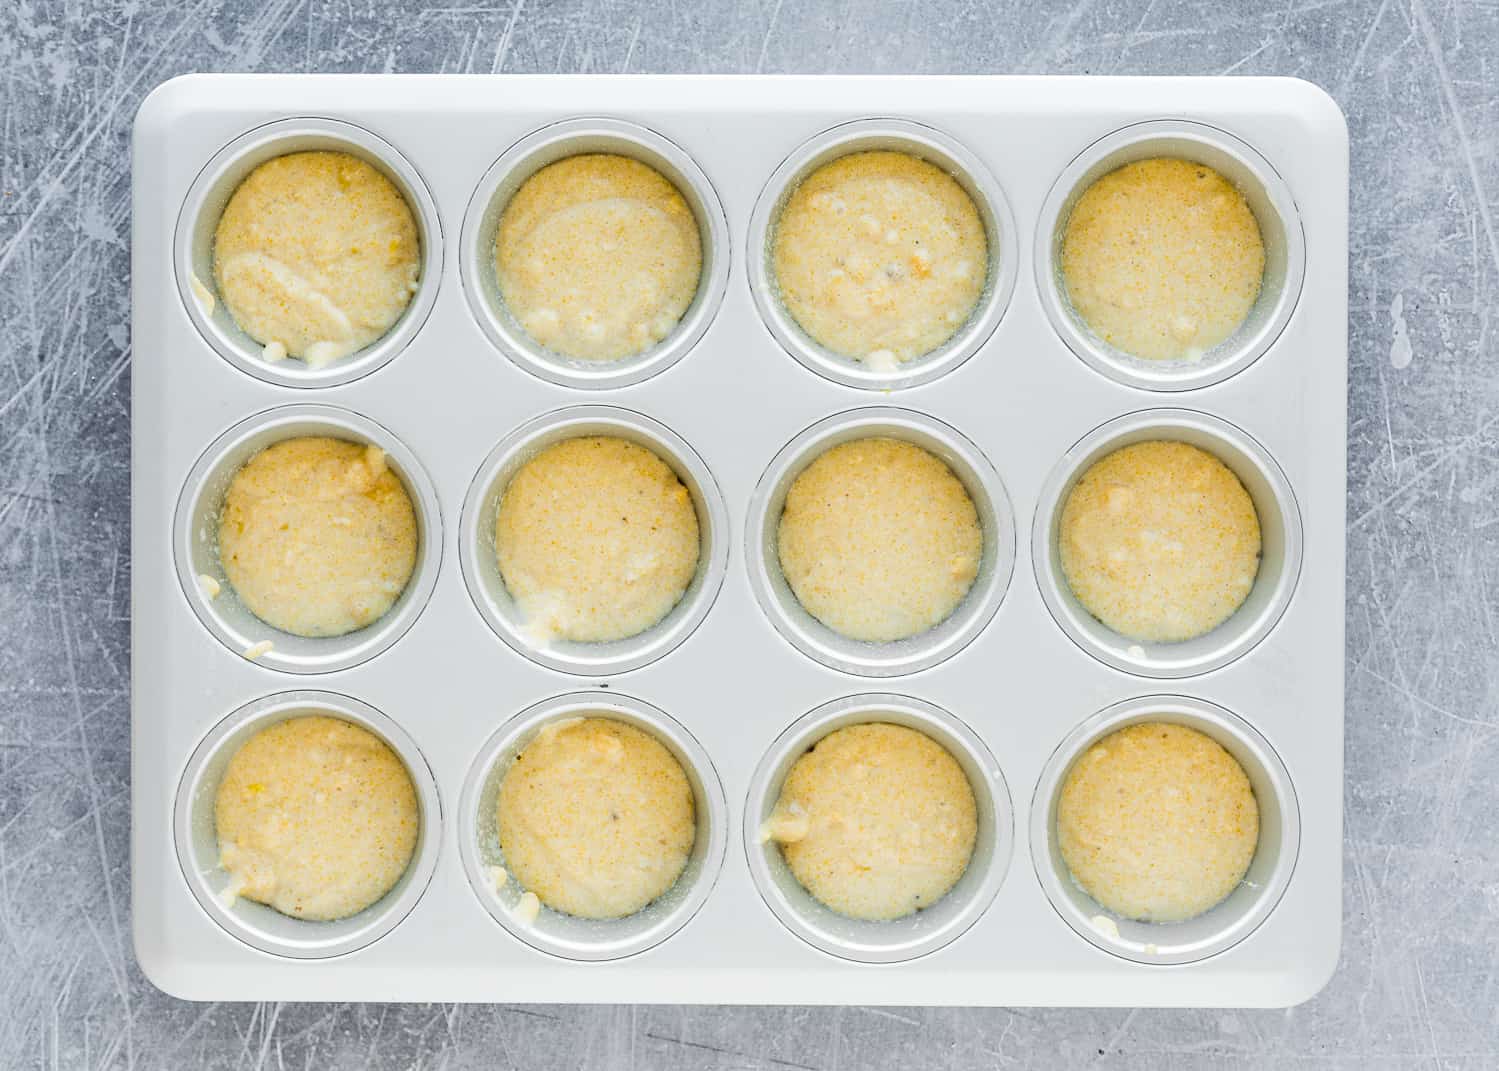 Eggless Cornbread Muffins batter in a muffin pan.